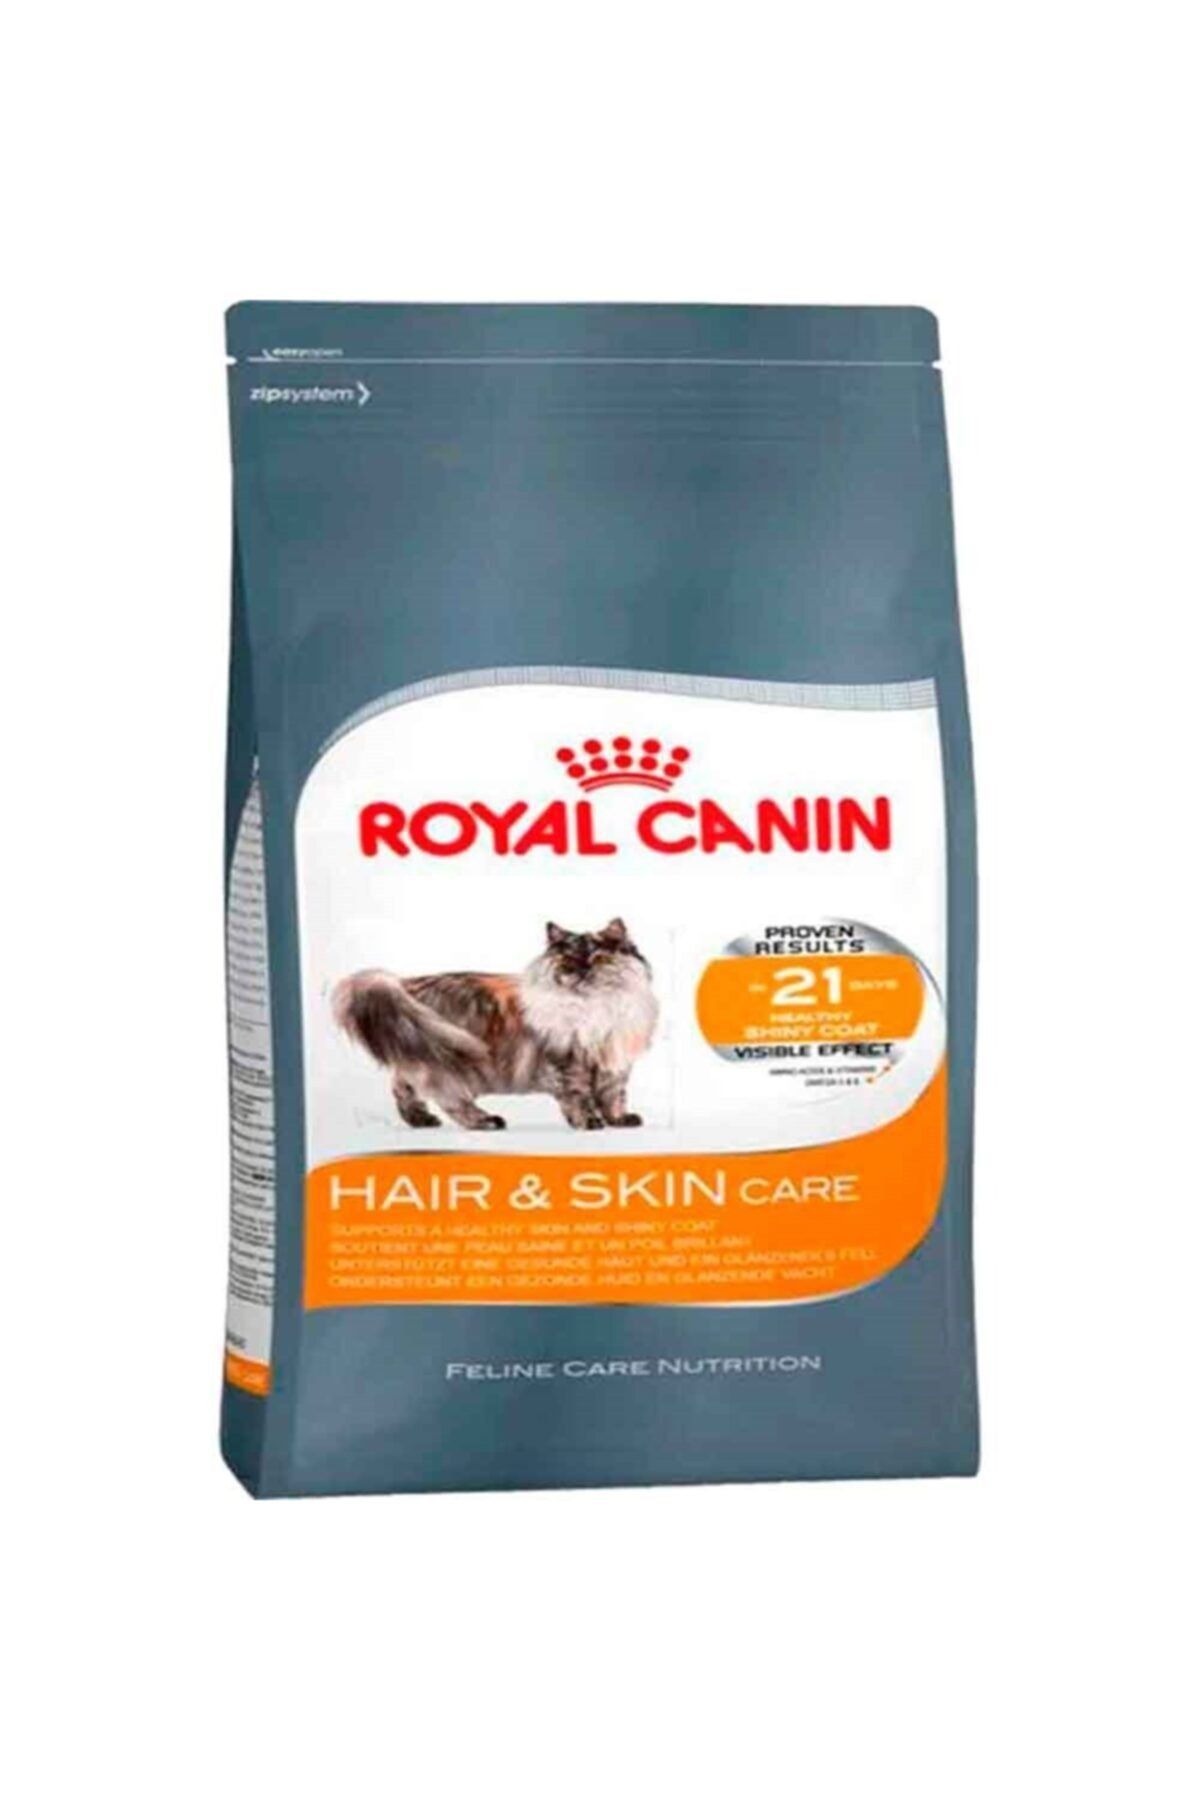 Royal Canin Hair Skin 2 Kg